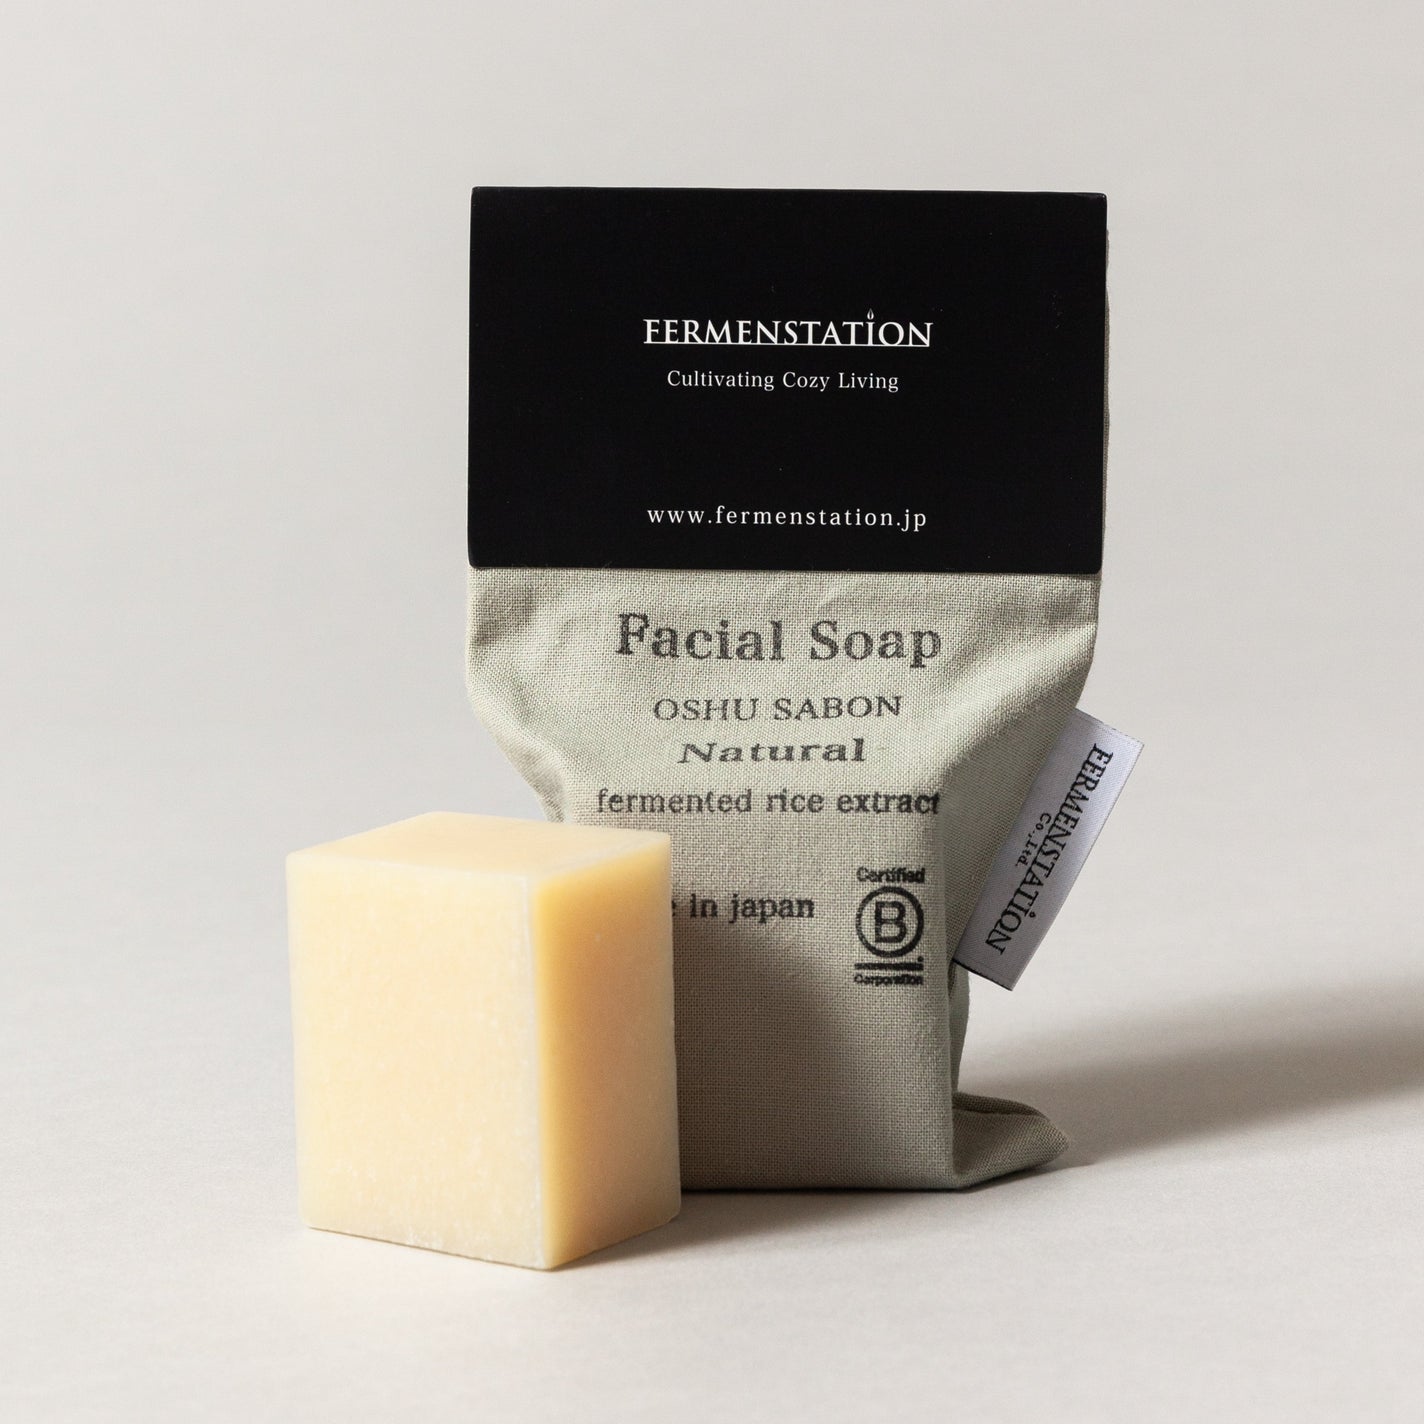 Fermenstation Facial Soap - Natural